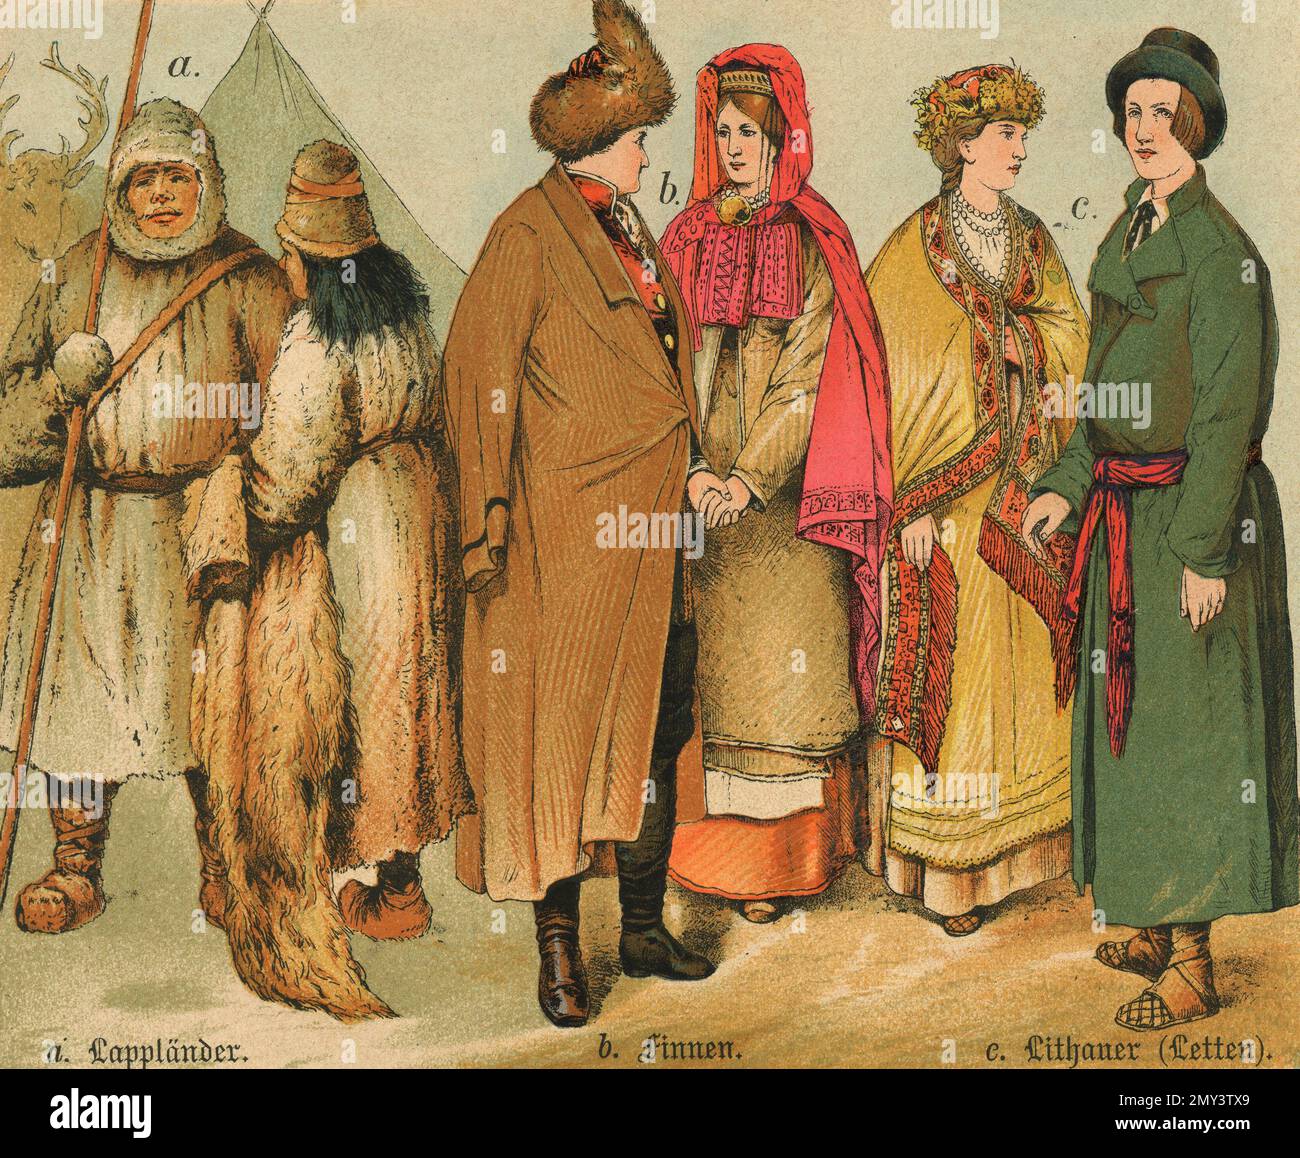 Popolazioni del mondo: Lapplanders, Finlandese, Latviani, illustrazione a colori, Germania 1800s Foto Stock